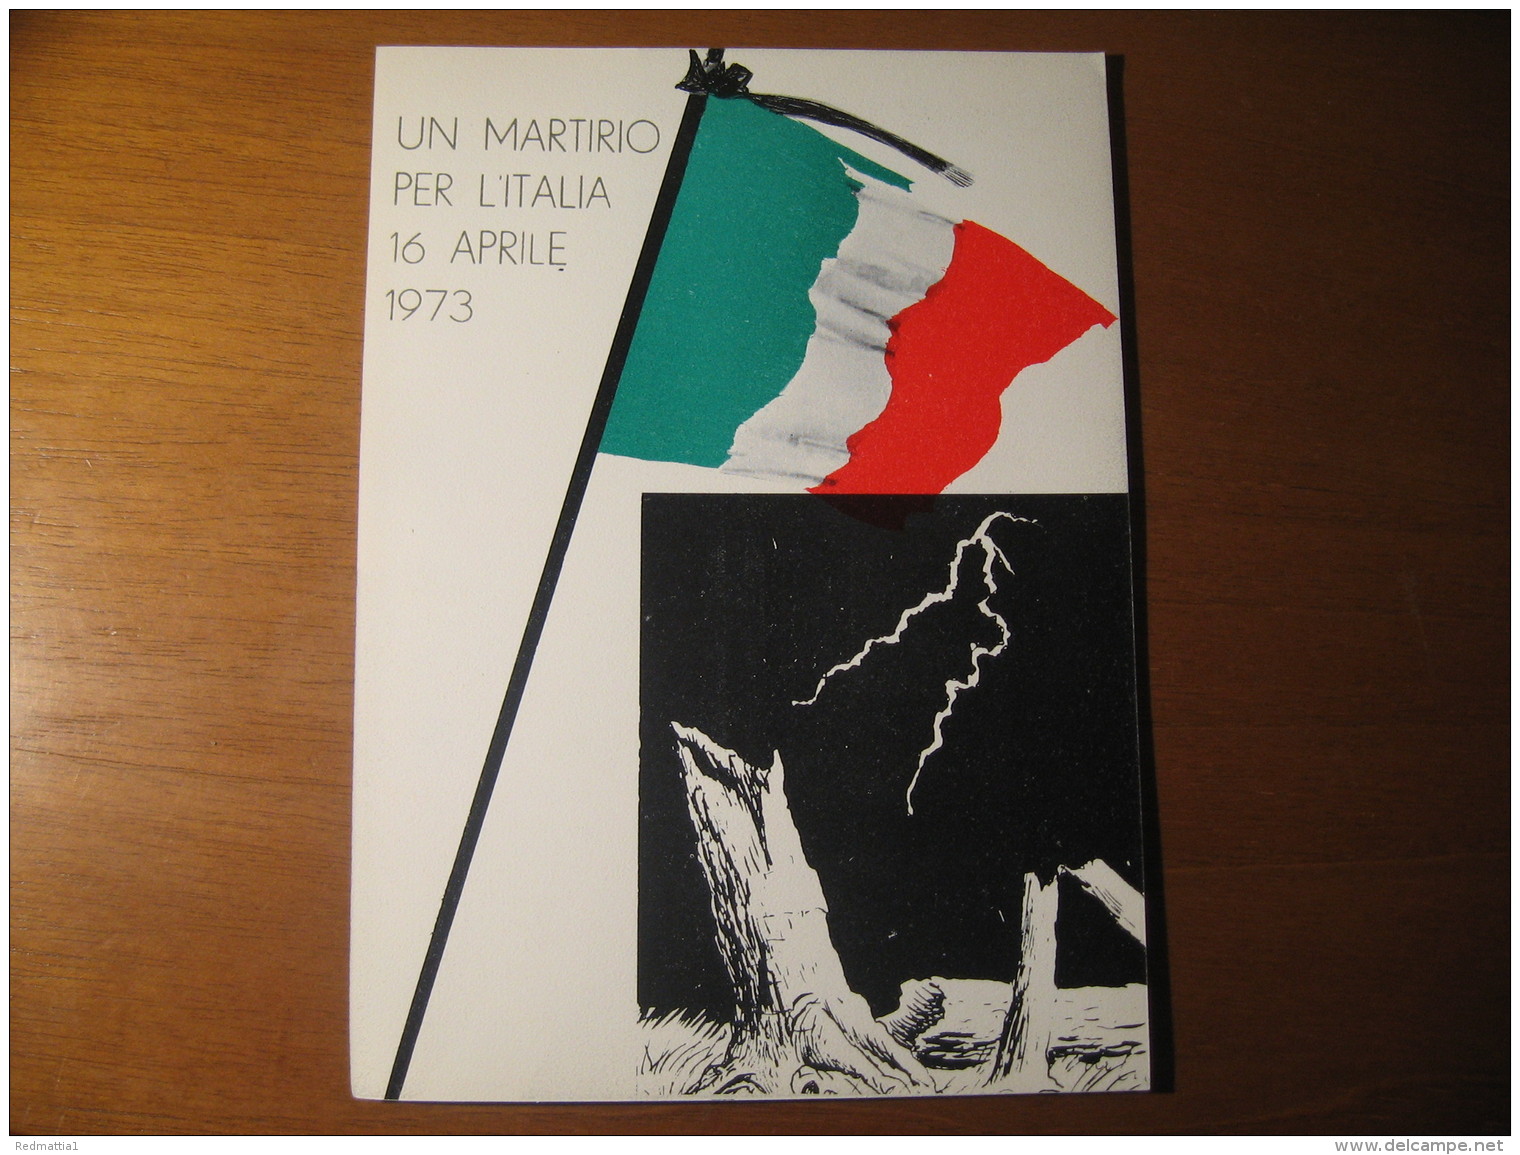 VOLANTINO UN MARTIRIO PER L ITALIA 16 APRILE 1973 SYEFANO MATTEI VIRGILIO MATTEI - Manifesti